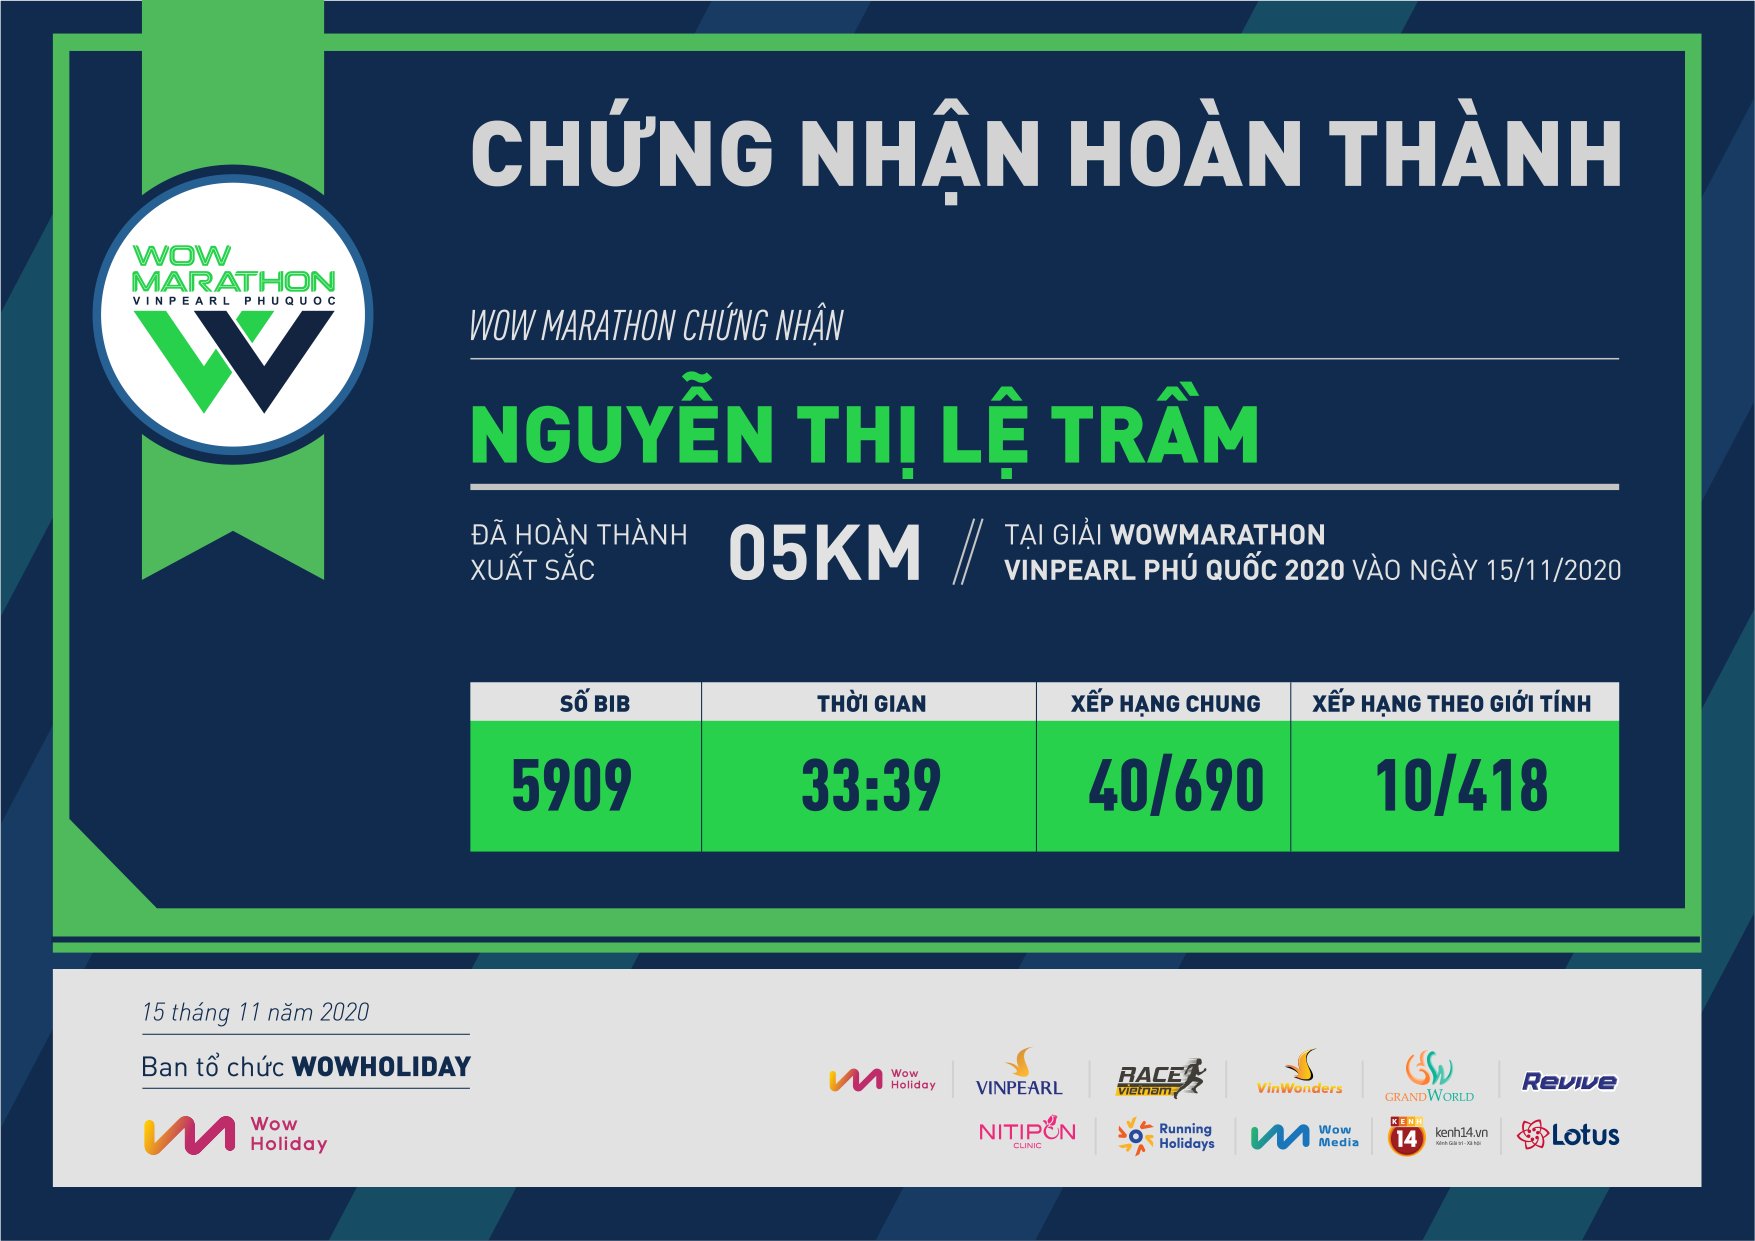 5909 - Nguyễn Thị Lệ Trầm